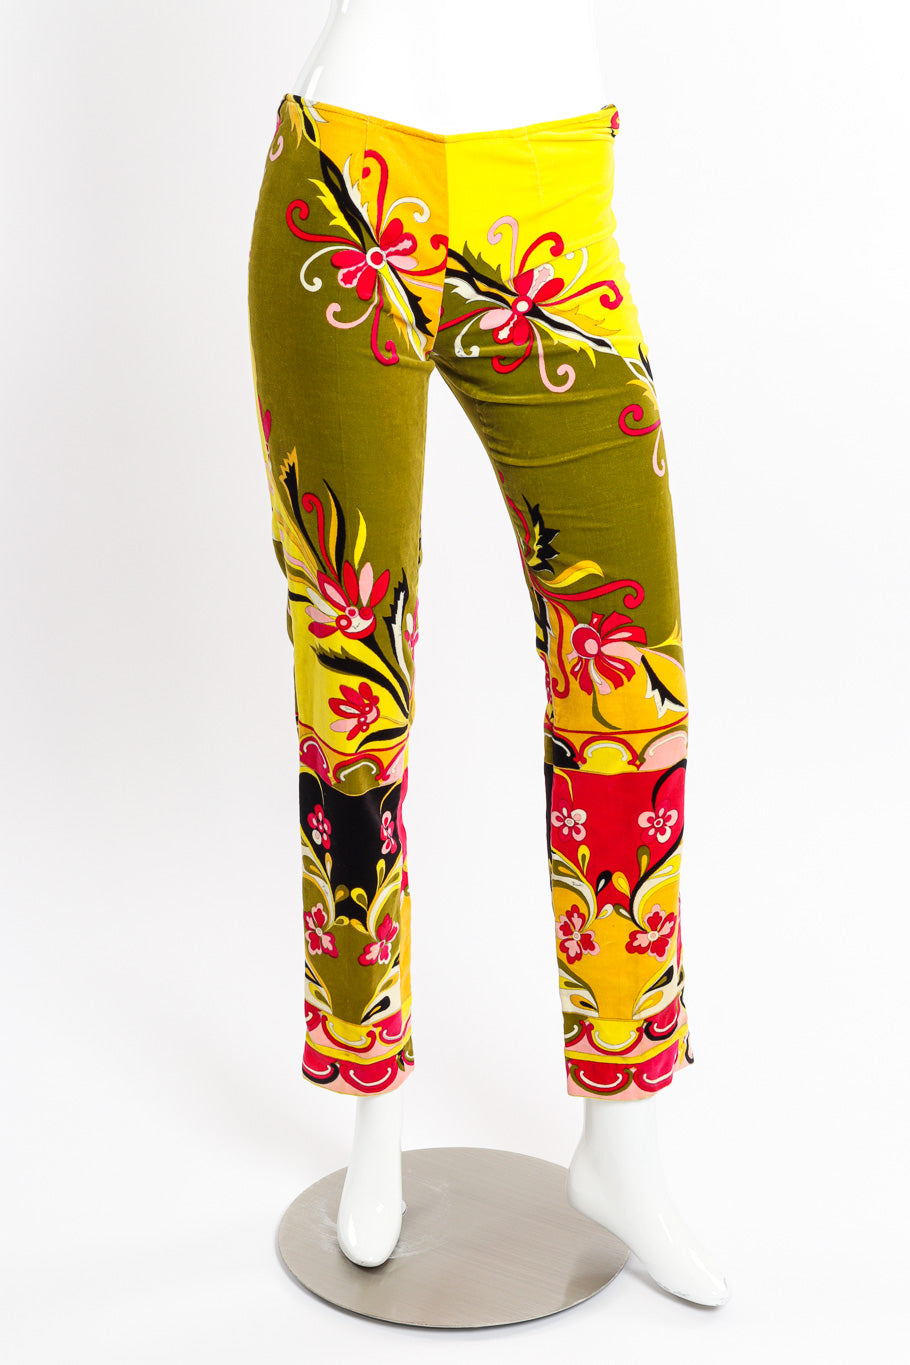 Mod floral pantsuit by Emilio Pucci on mannequin pants only @recessla